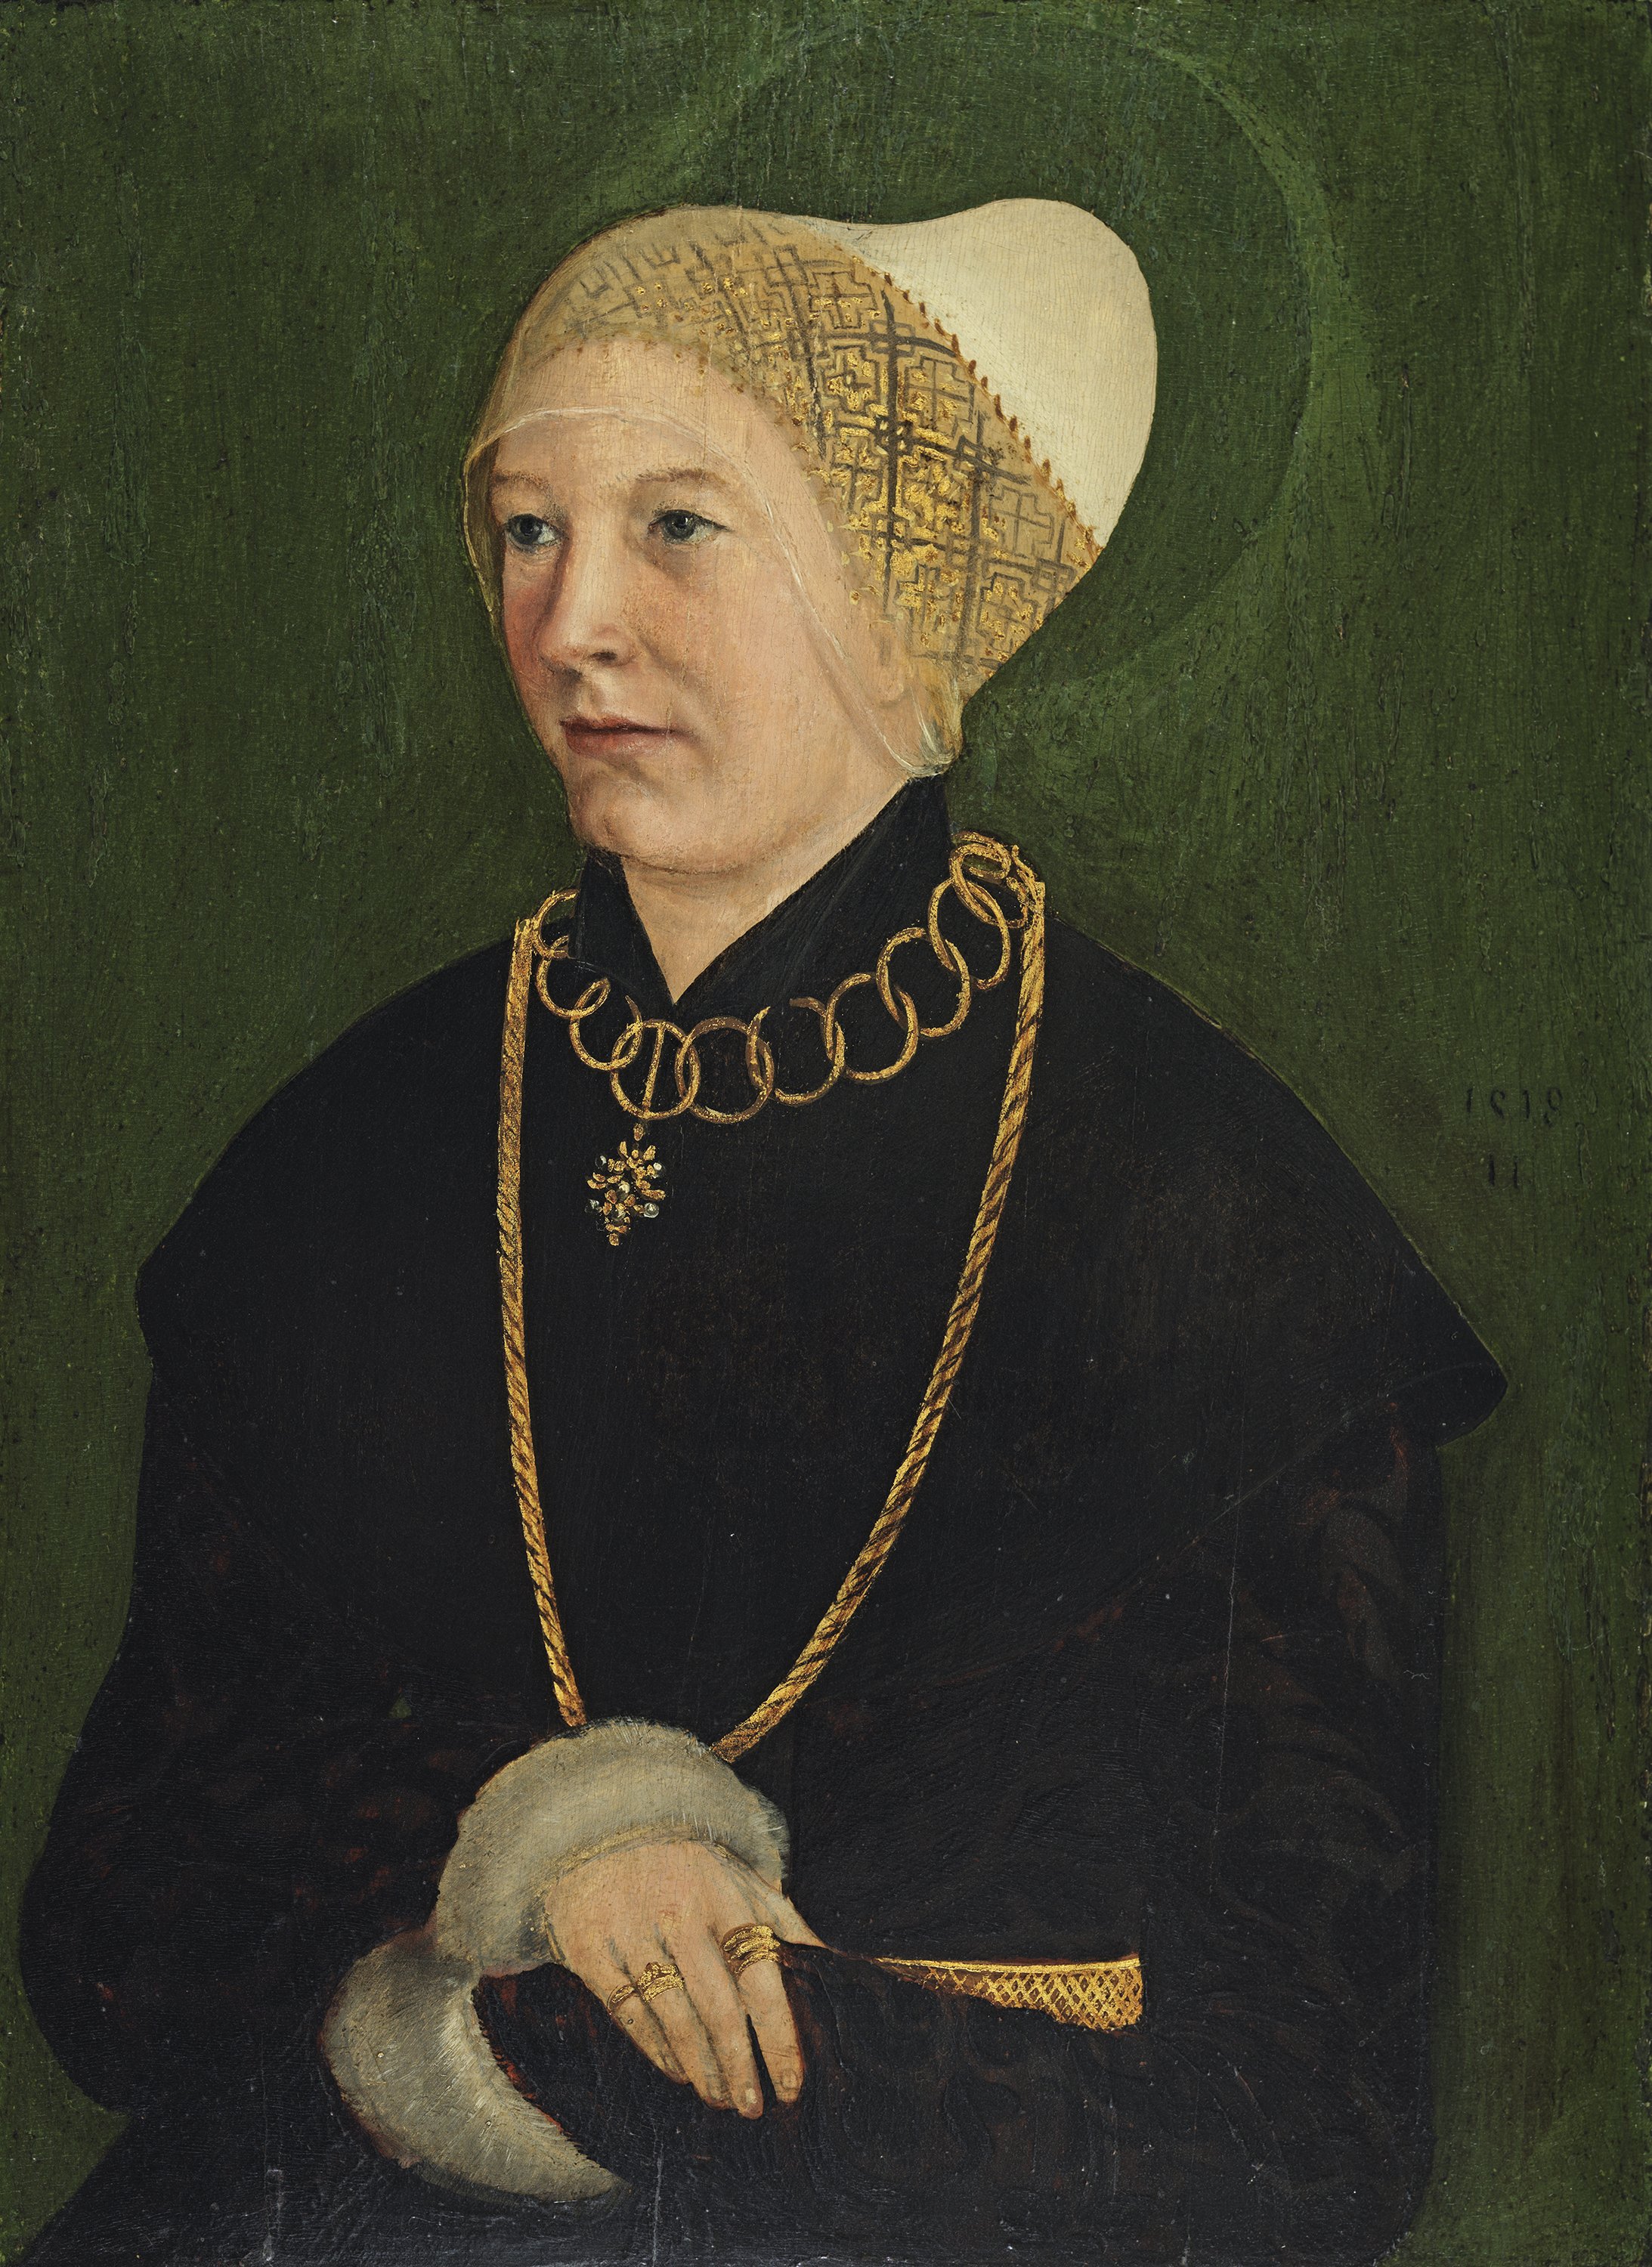 Portrait of a Woman (Anna Fugger?). Retrato de una mujer (¿Anna Fugger?), 1518